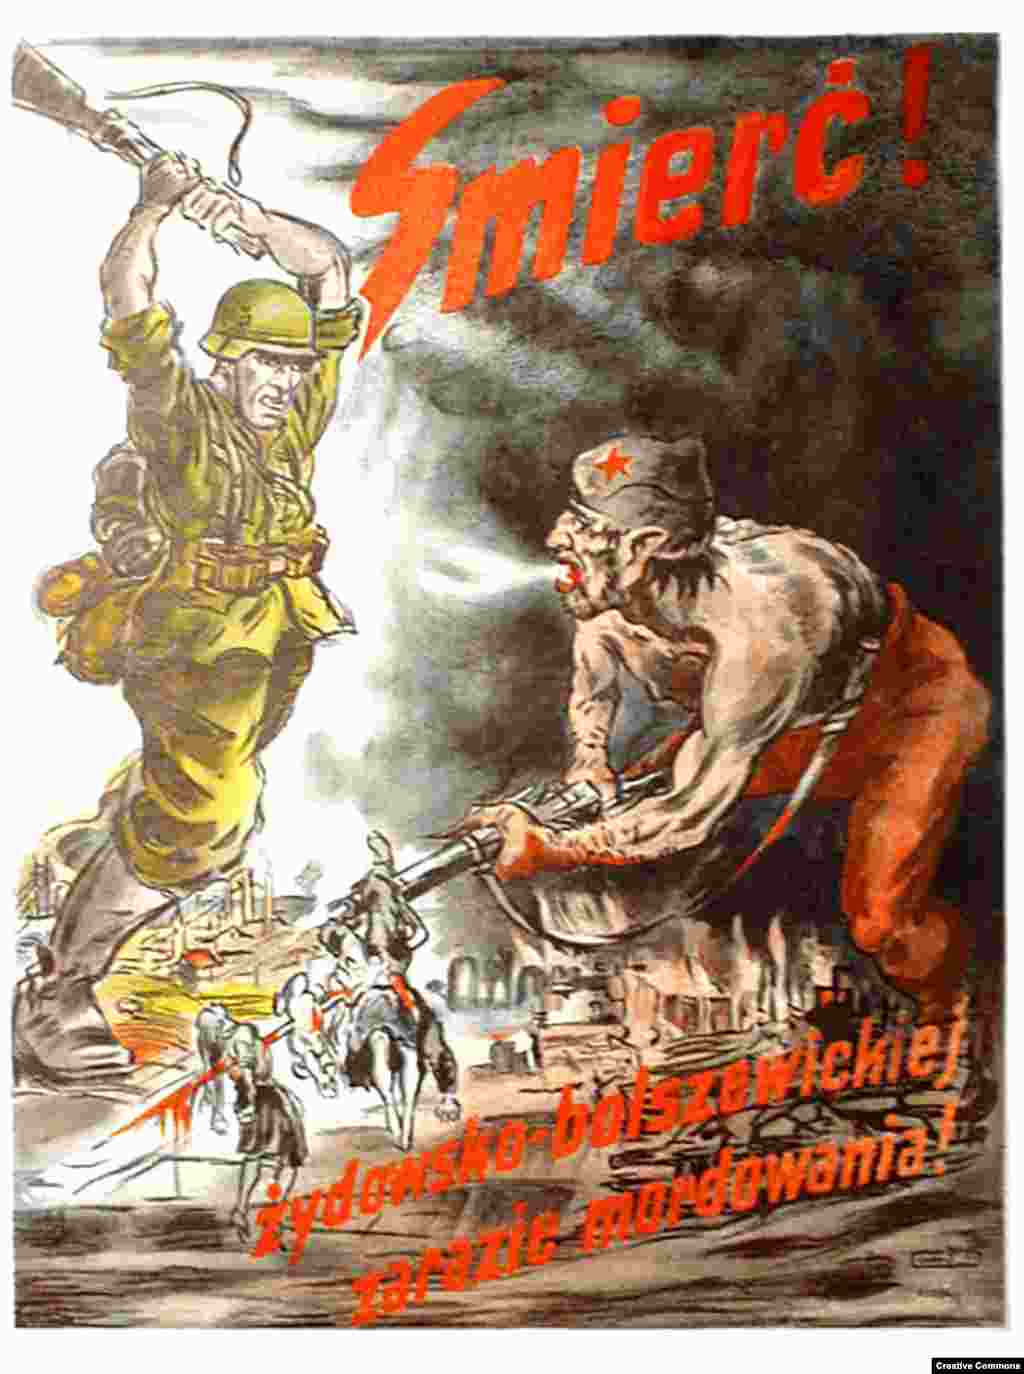 Нацистки пропаганден плакат зове за &bdquo;смърт на еврейско-болшевишката епидемия от убийства&ldquo;. Освен в екзекуции от ръцете на съветската тайна полиция, милиони украинци са загинали при Сталин в резултат на масовия глад през 1932-1933 г. в Украйна, известен като Гладомор. Нацистката пропаганда свързва евреите със съветската власт. Тя подсилва убежденията на част от украинското националистическо движение, възникнало в регион с&nbsp; дълга история на антисемитско насилие.